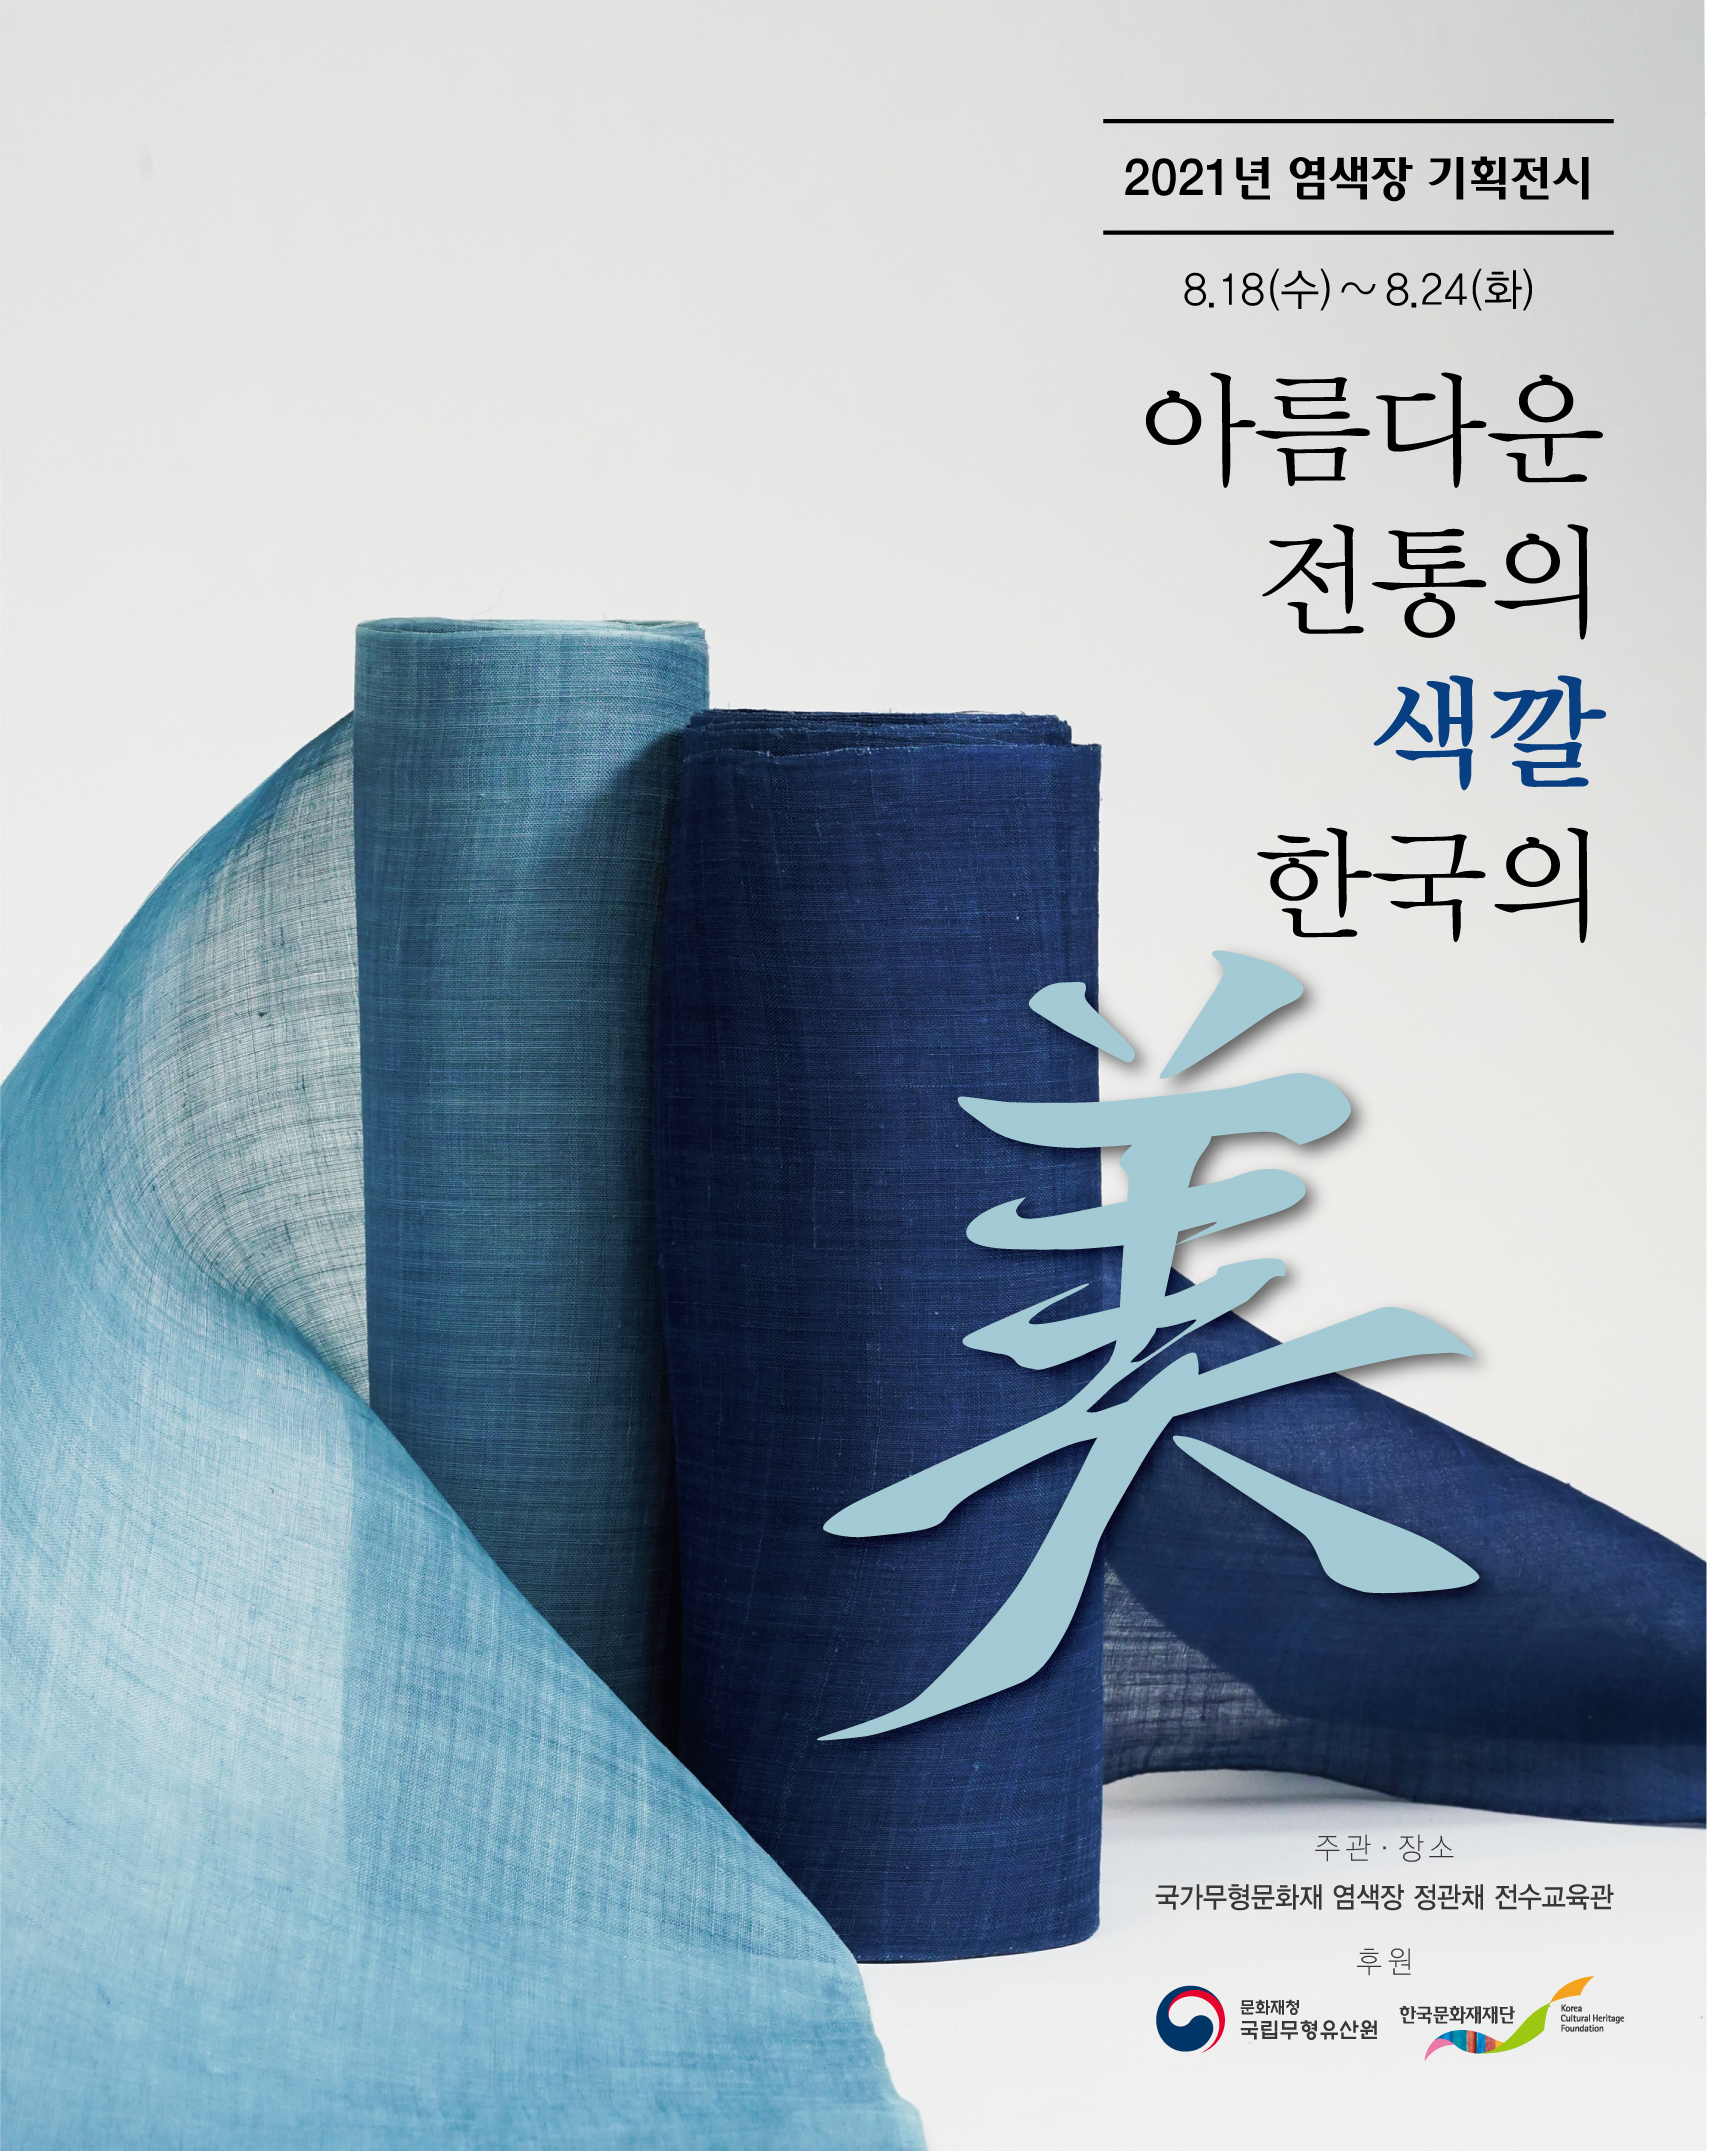  2021년 염색장 기획전시 8.18(수) ~ 8.24(화) 아름다운 전통의 색깔, 한국의 美 (자세한 내용 하단 참조) 